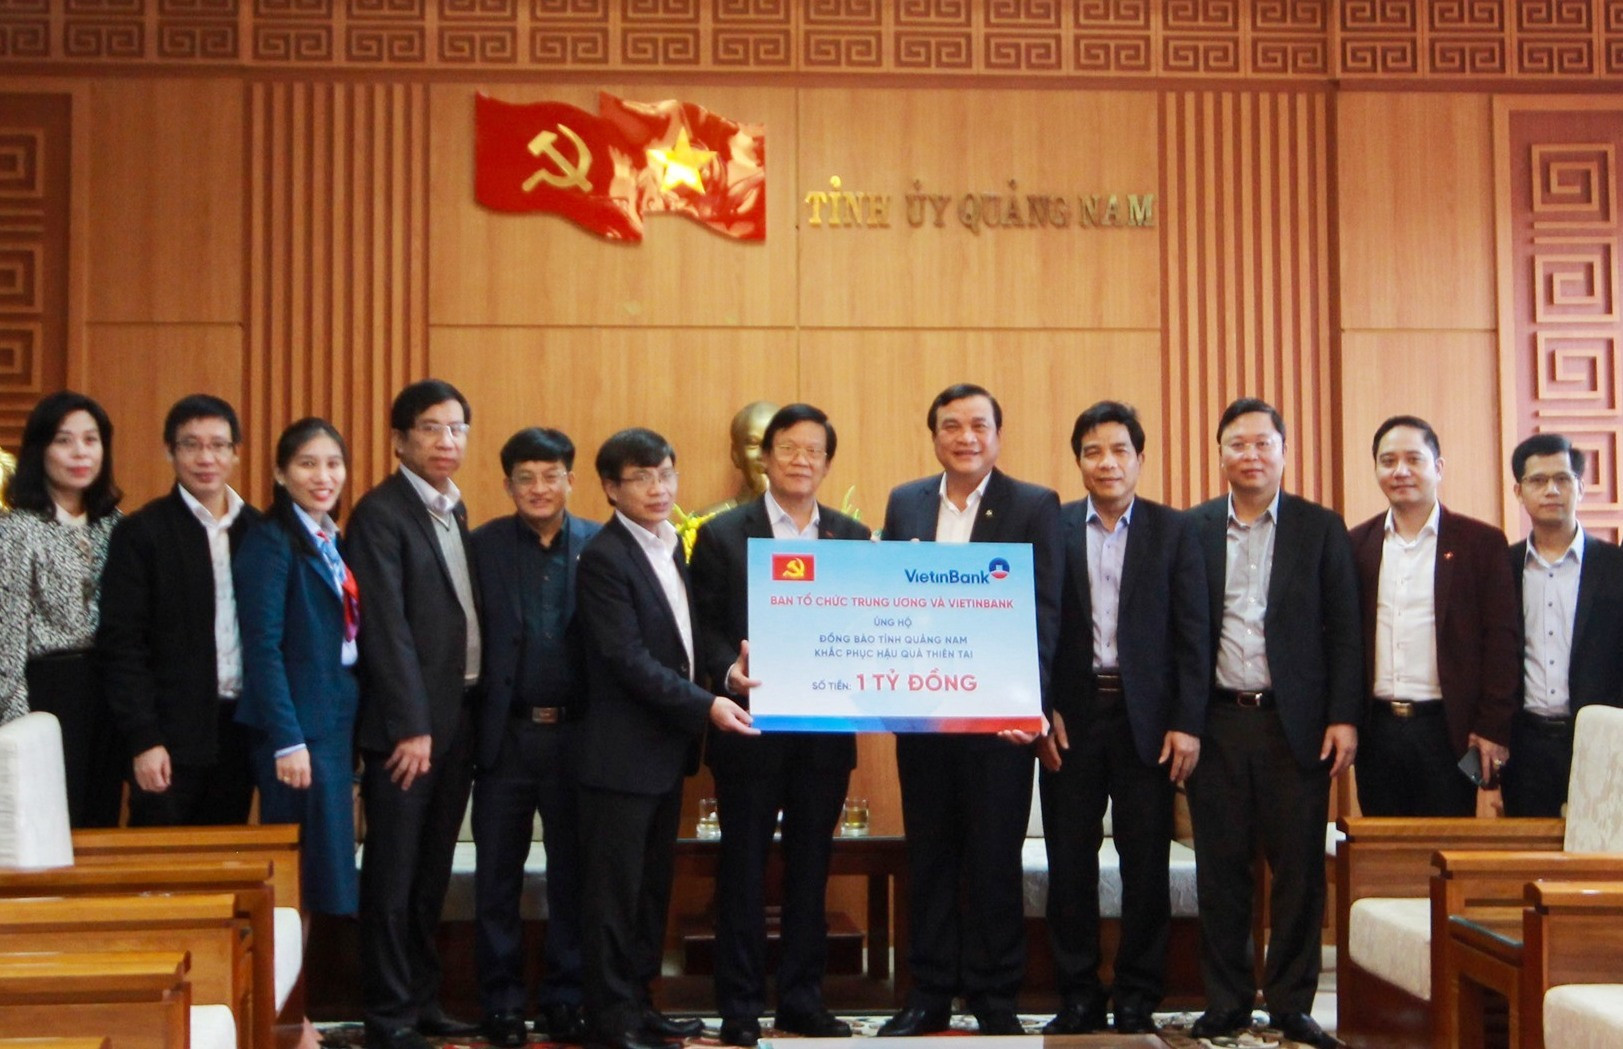 đoàn công tác cùng Ngân hàng TMCP Công Thương Việt Nam (VietinBank) ủng hộ đồng bào Quảng Nam 1 tỷ đồng và riêng nhân dân huyện Bắc Trà My 500 triệu đồng khắc phục hậu quả thiên tai;